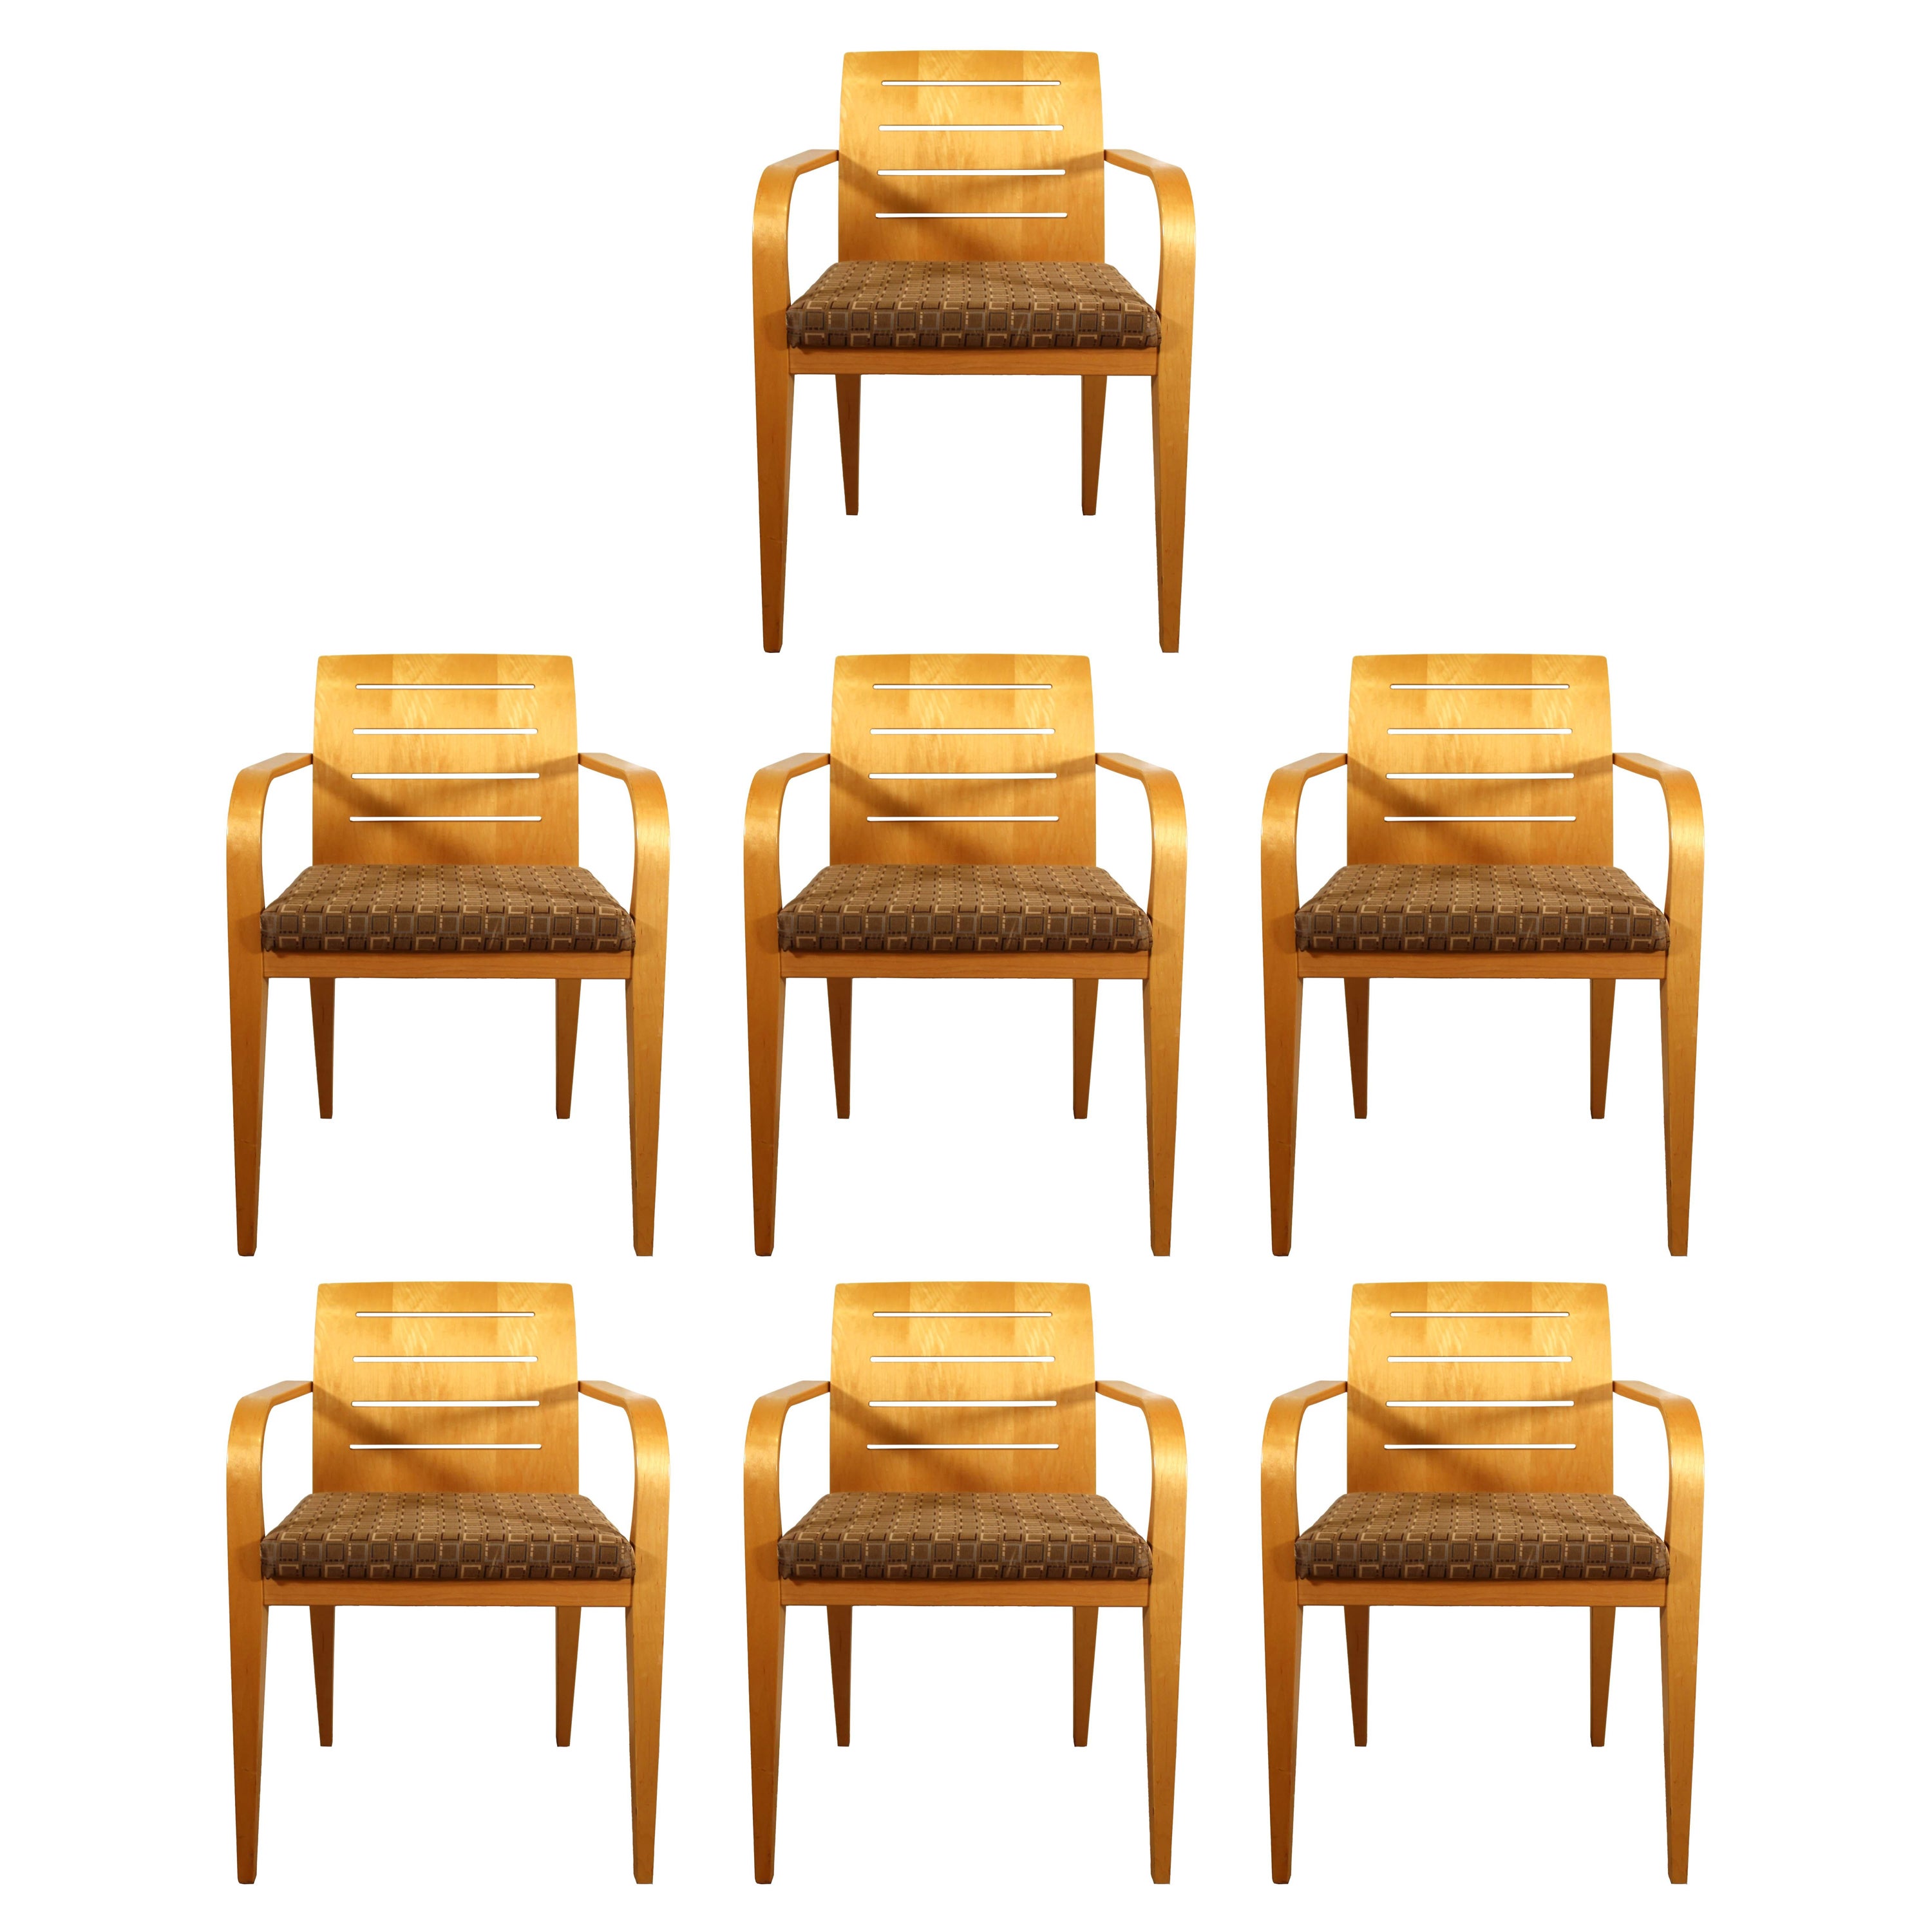 Calvin Klein Seating - 2 For Sale at 1stDibs | calvin klein home furniture, calvin  klein furniture for sale, calvin klein sofa